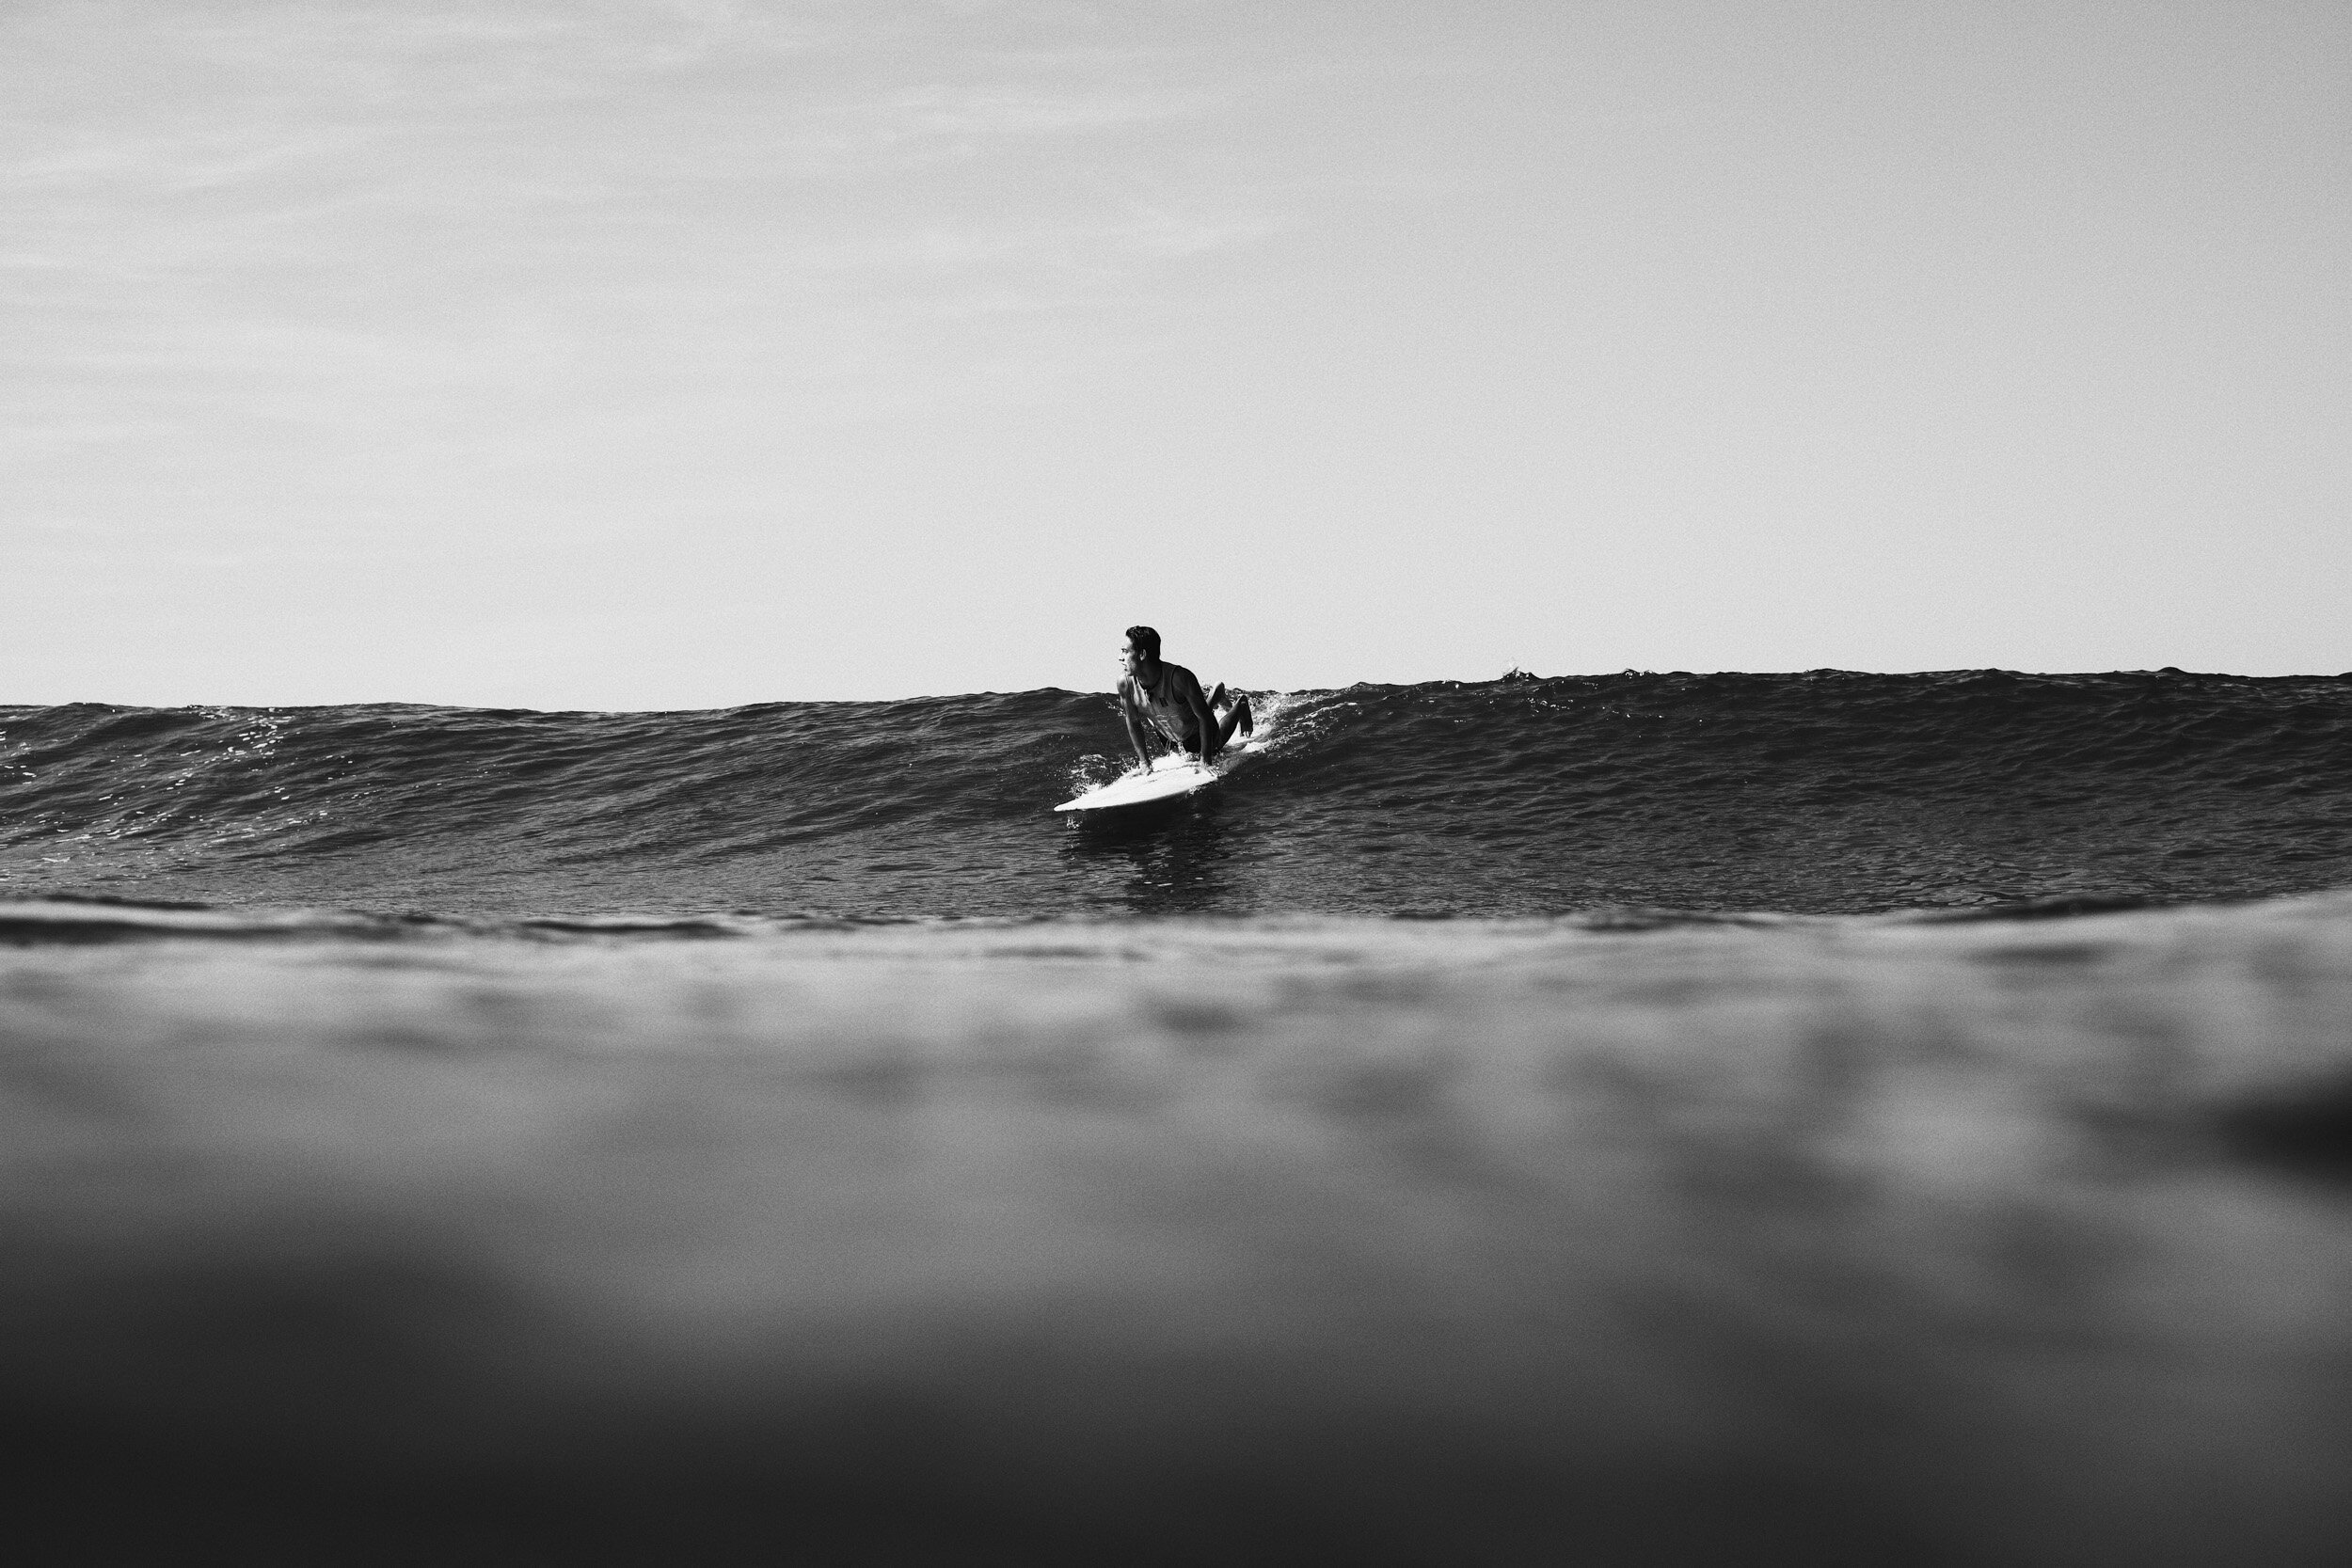 la-saladita-mexico-surf-longboard-fotografia-heiko-bothe-2105.jpg